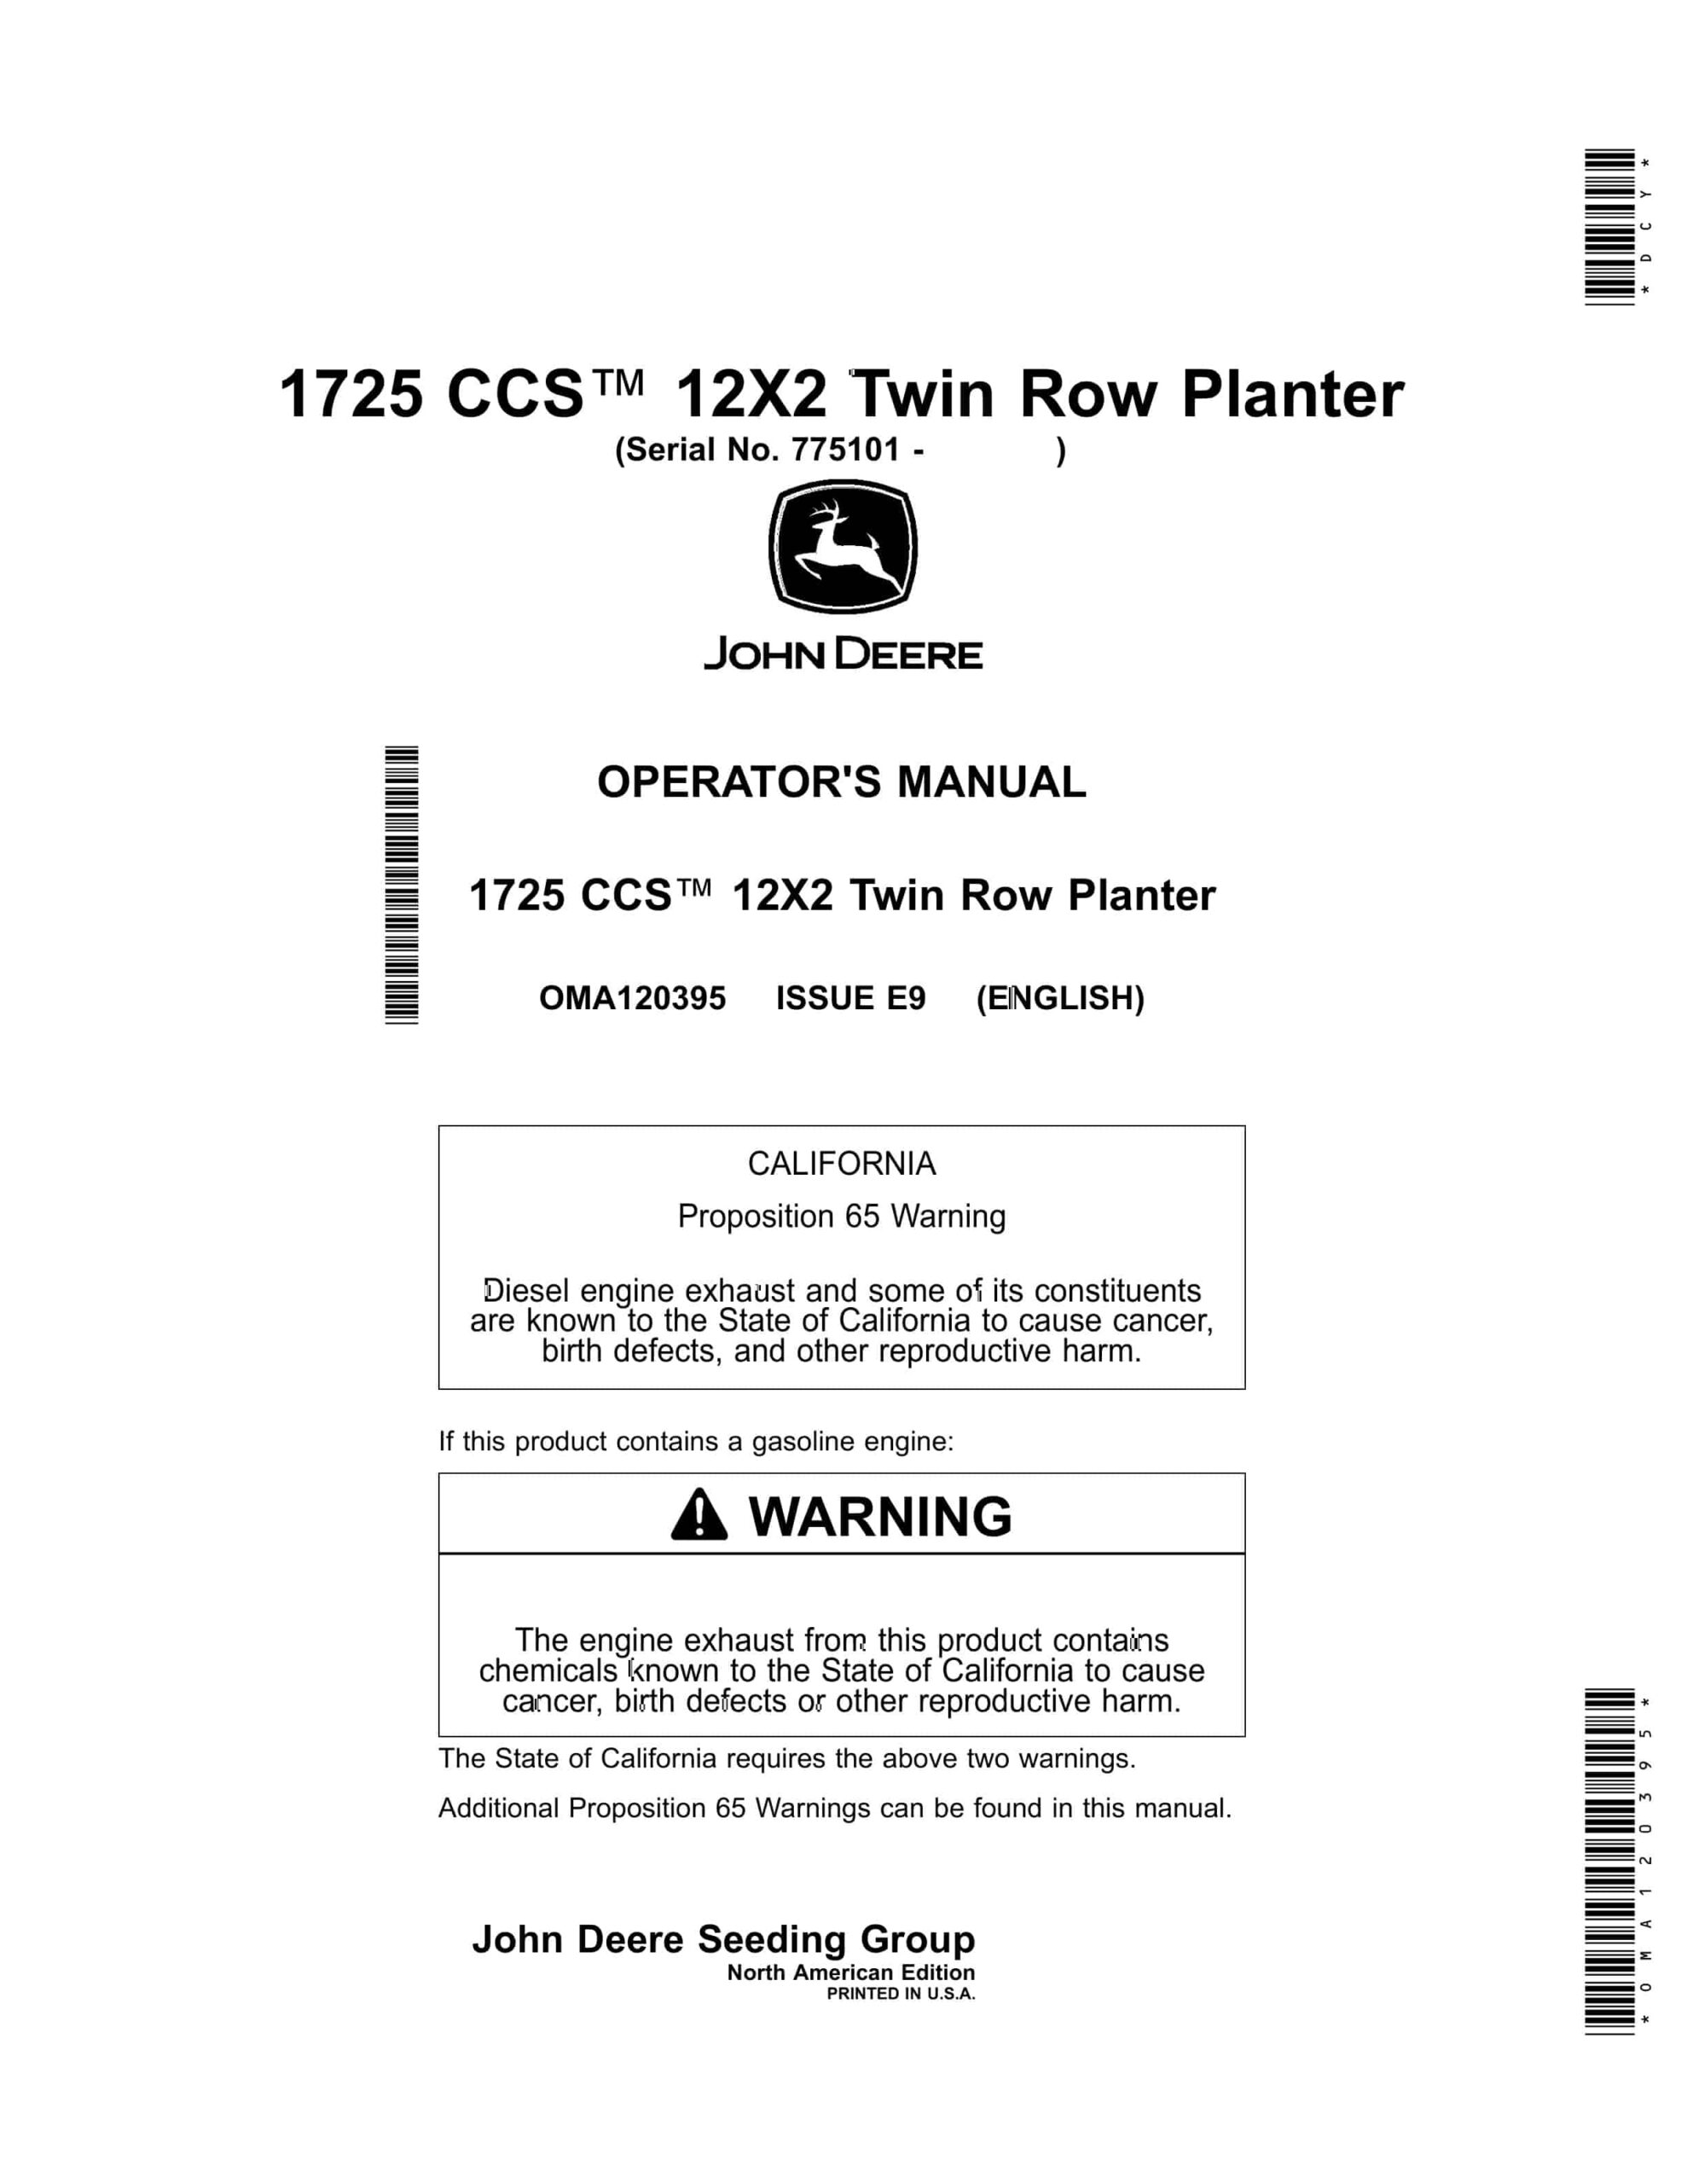 John Deere 1725 CCS 12X2 Twin Row Planter Operator Manual OMA120395-1